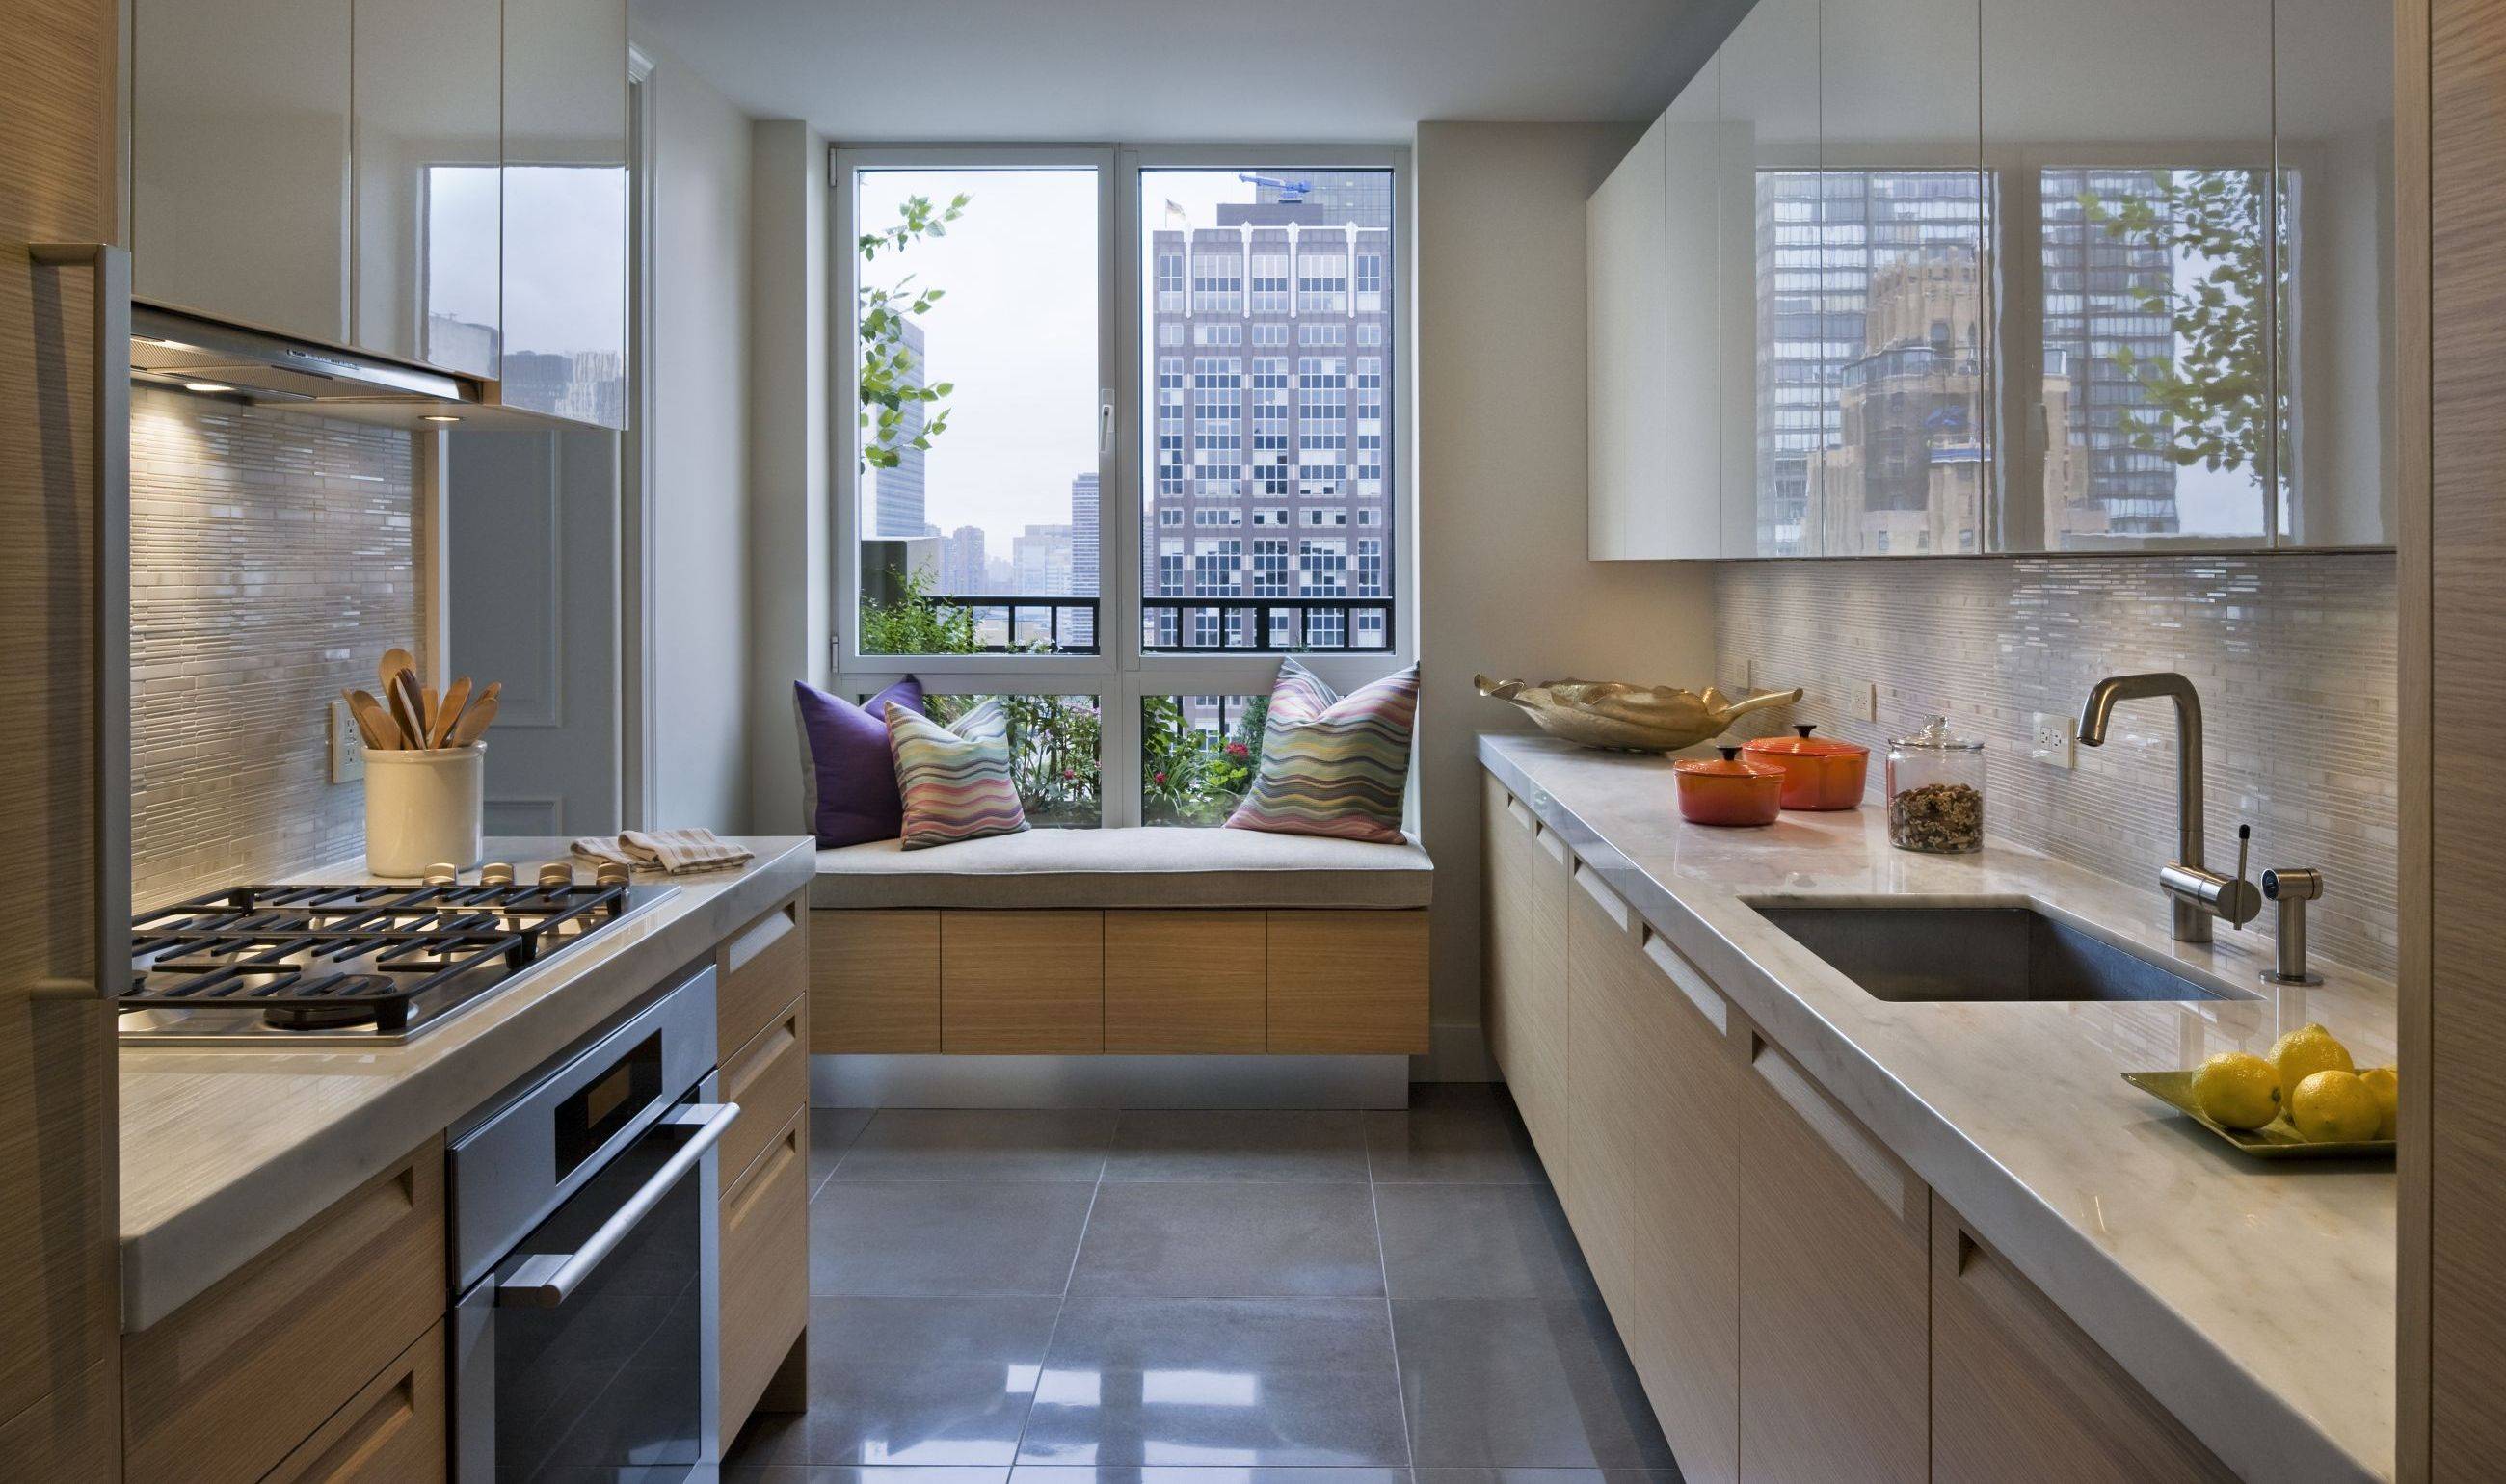 Кухня с окном: 110 фото размещения и использования в интерьере кухни окна